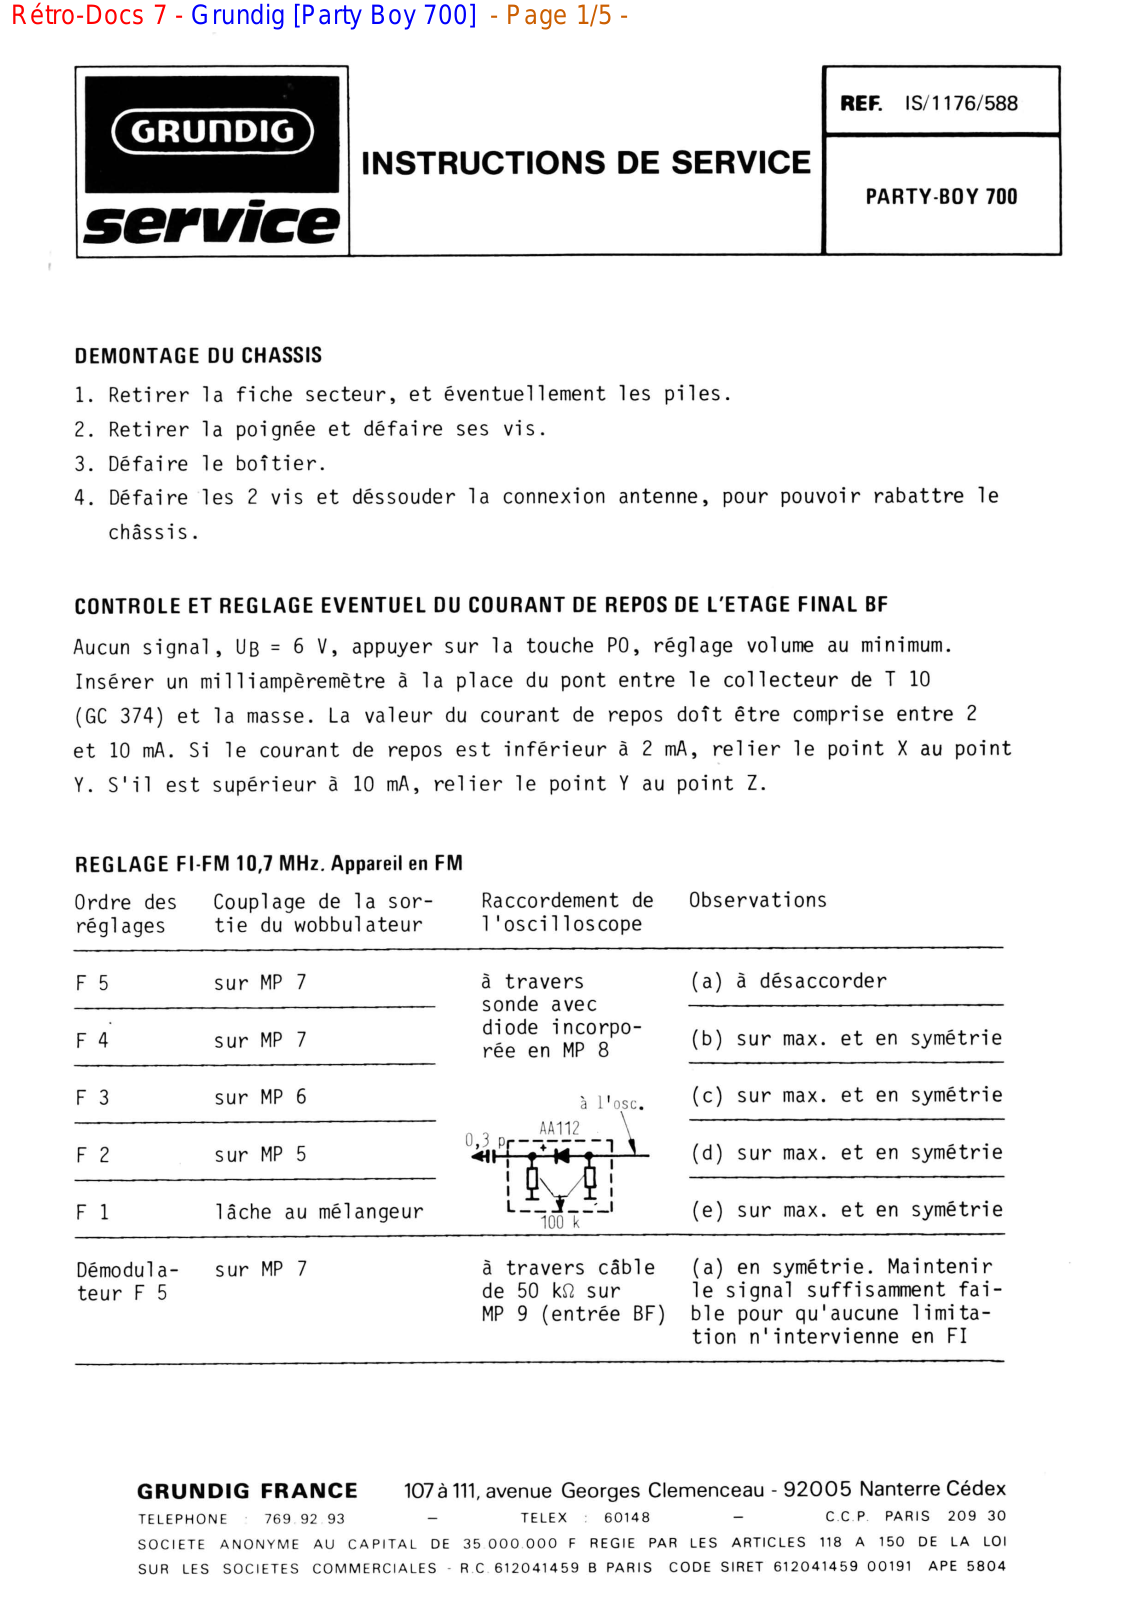 Grundig MV-4-Party-Boy-700 Service Manual